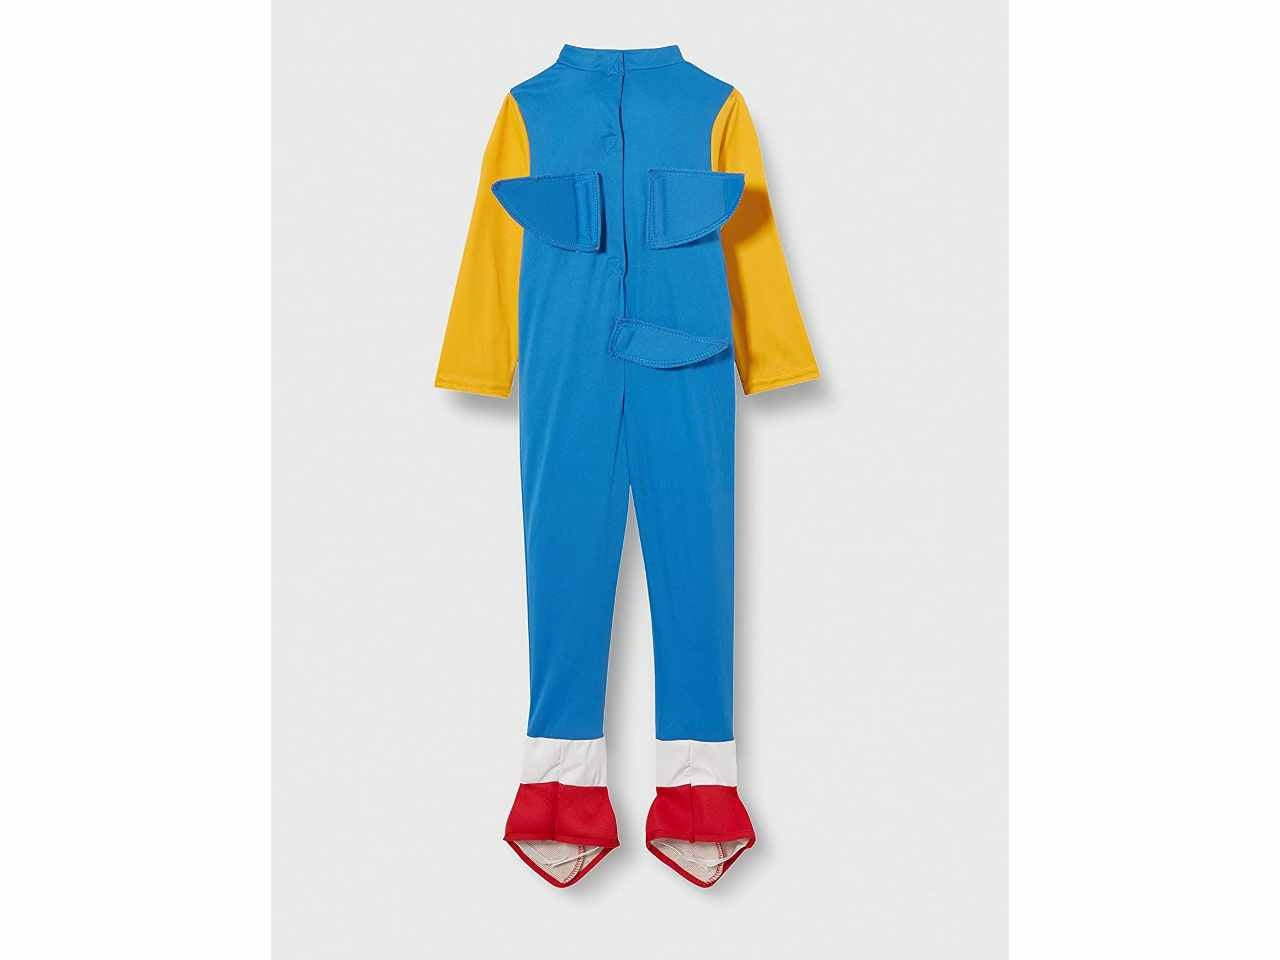 Costume da Sonic™ deluxe per bambini – Mstore016